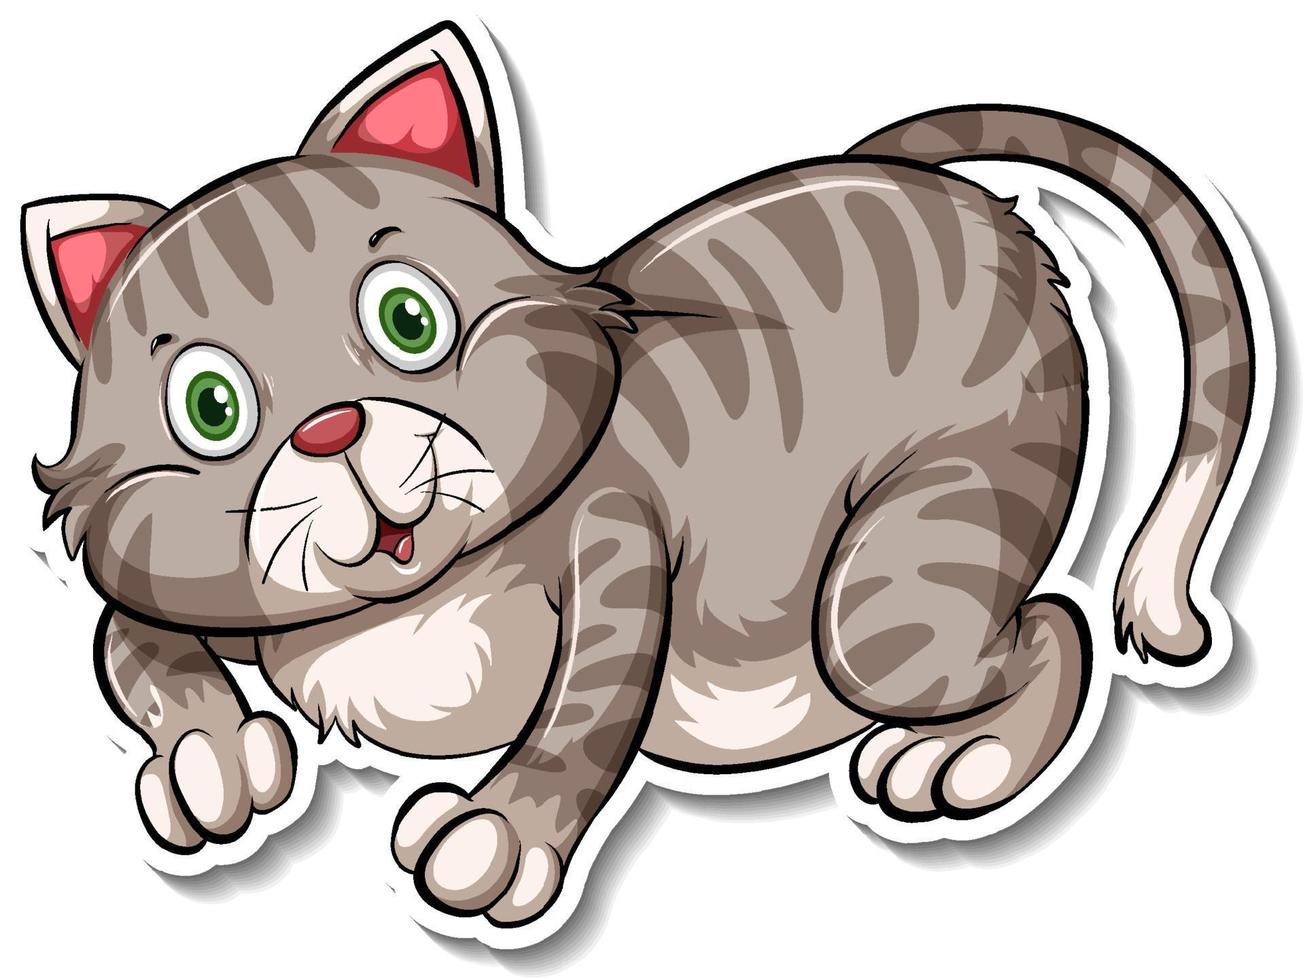 una plantilla de pegatina de personaje de dibujos animados de gato vector